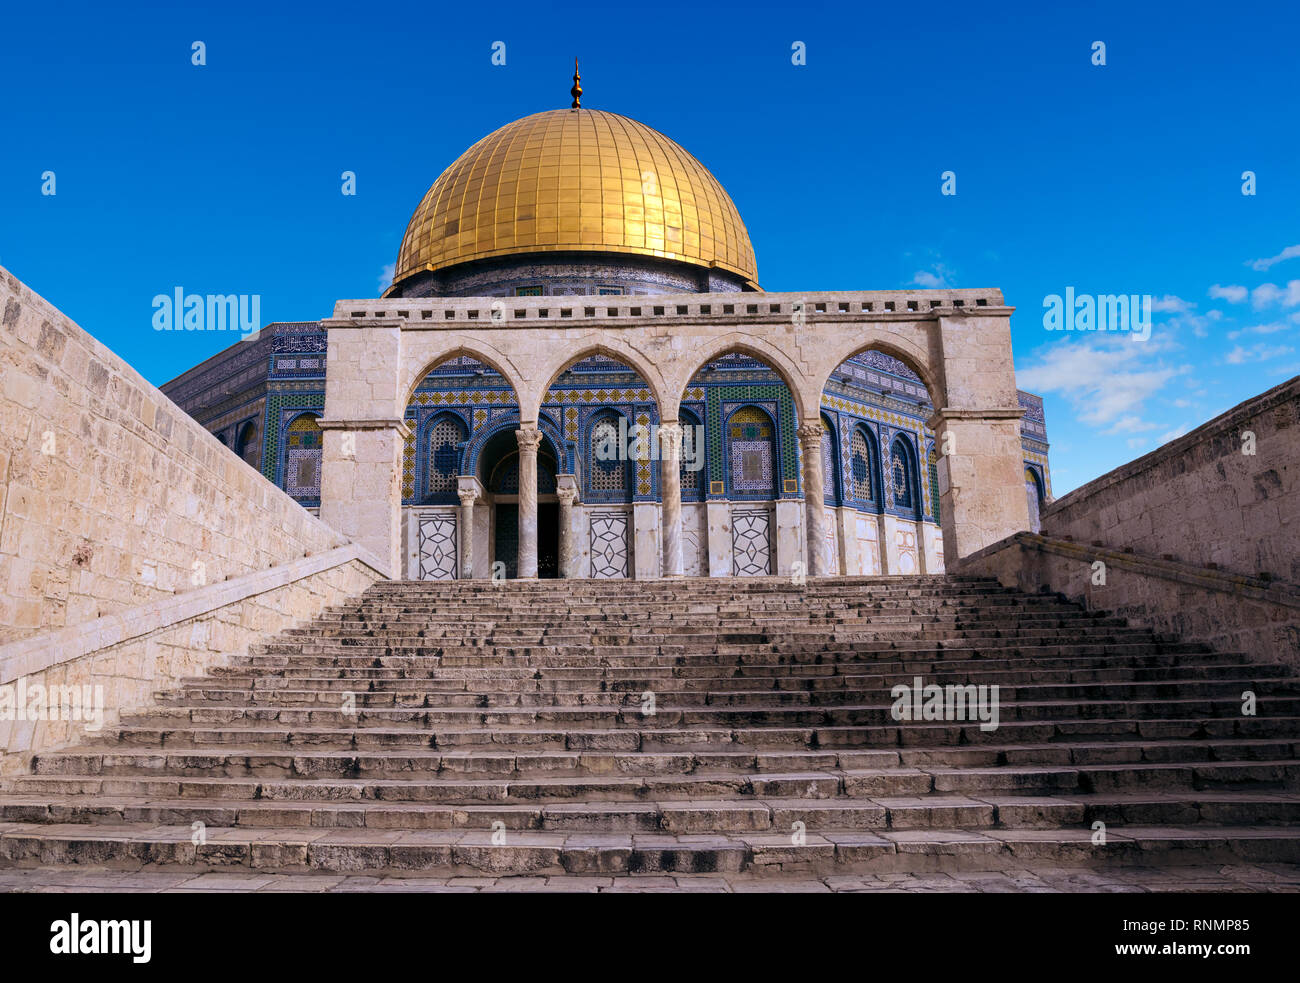 La cúpula de la roca, la Mezquita Islámica del Monte del Templo, en Jerusalén, Israel, Oriente Medio Foto de stock